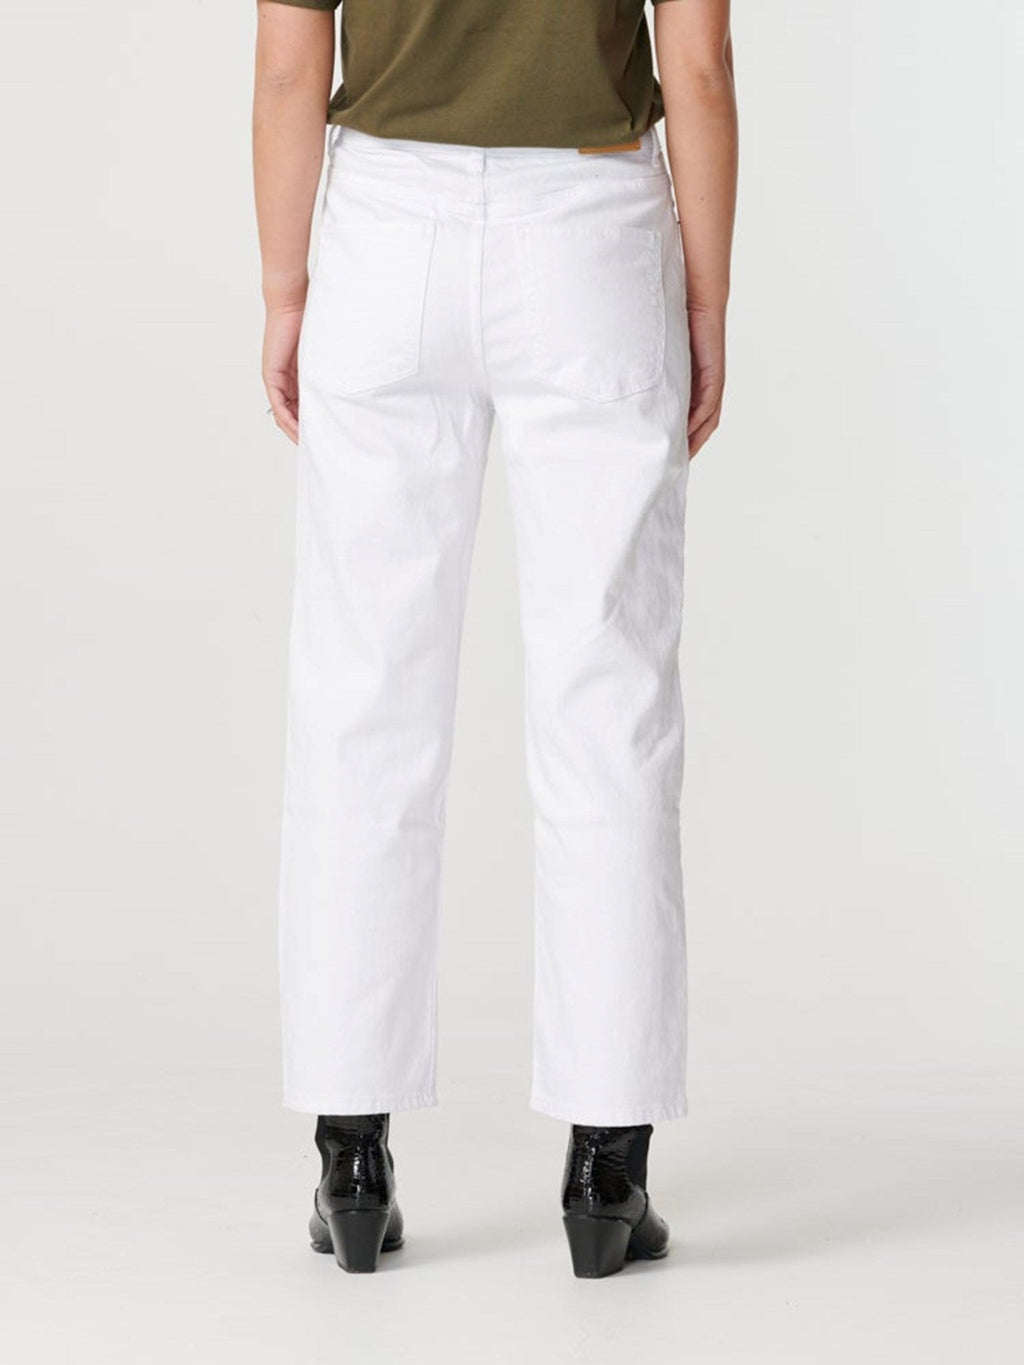 Breite Jeans mit hoher Taisten - Weiß